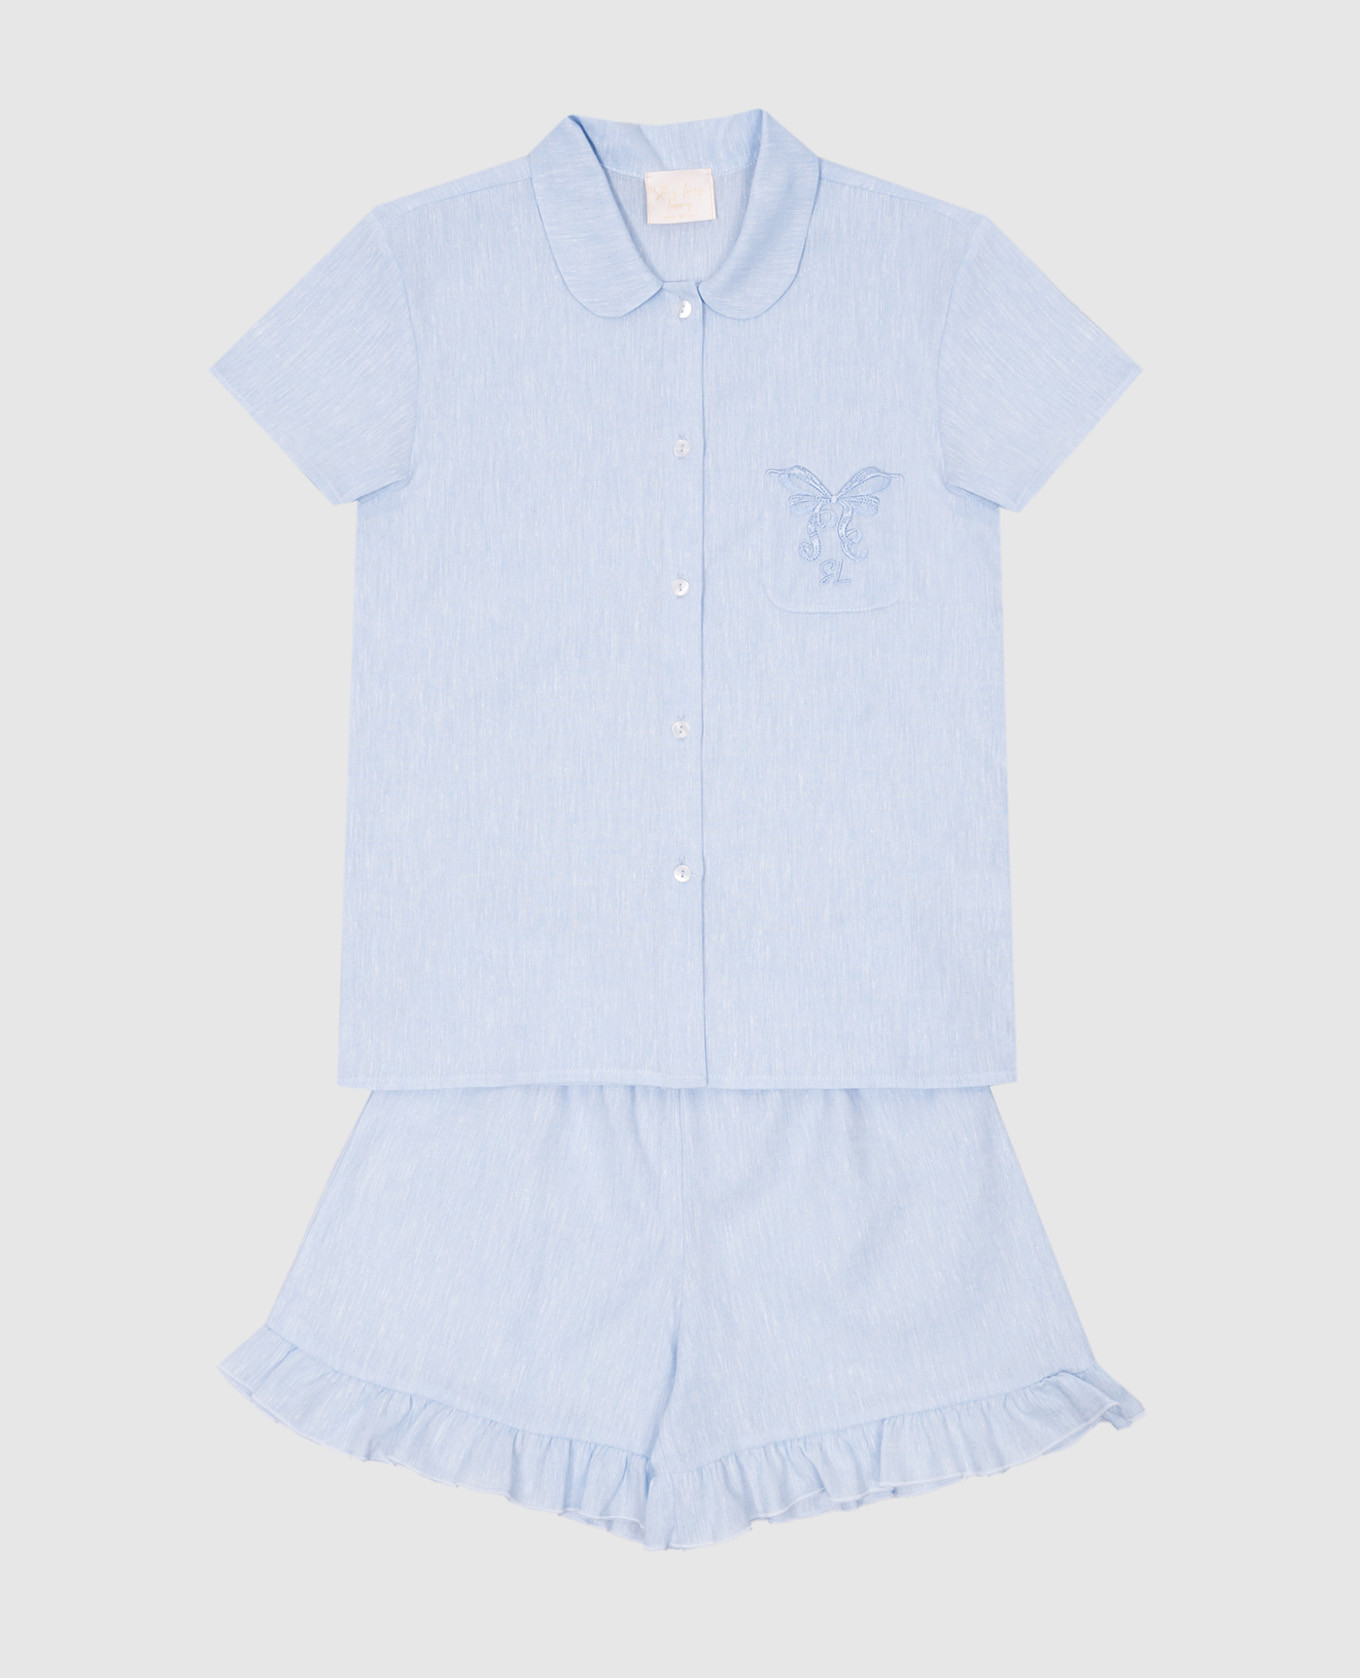 Детская голубая пижама с леном с вышивкой логотипа